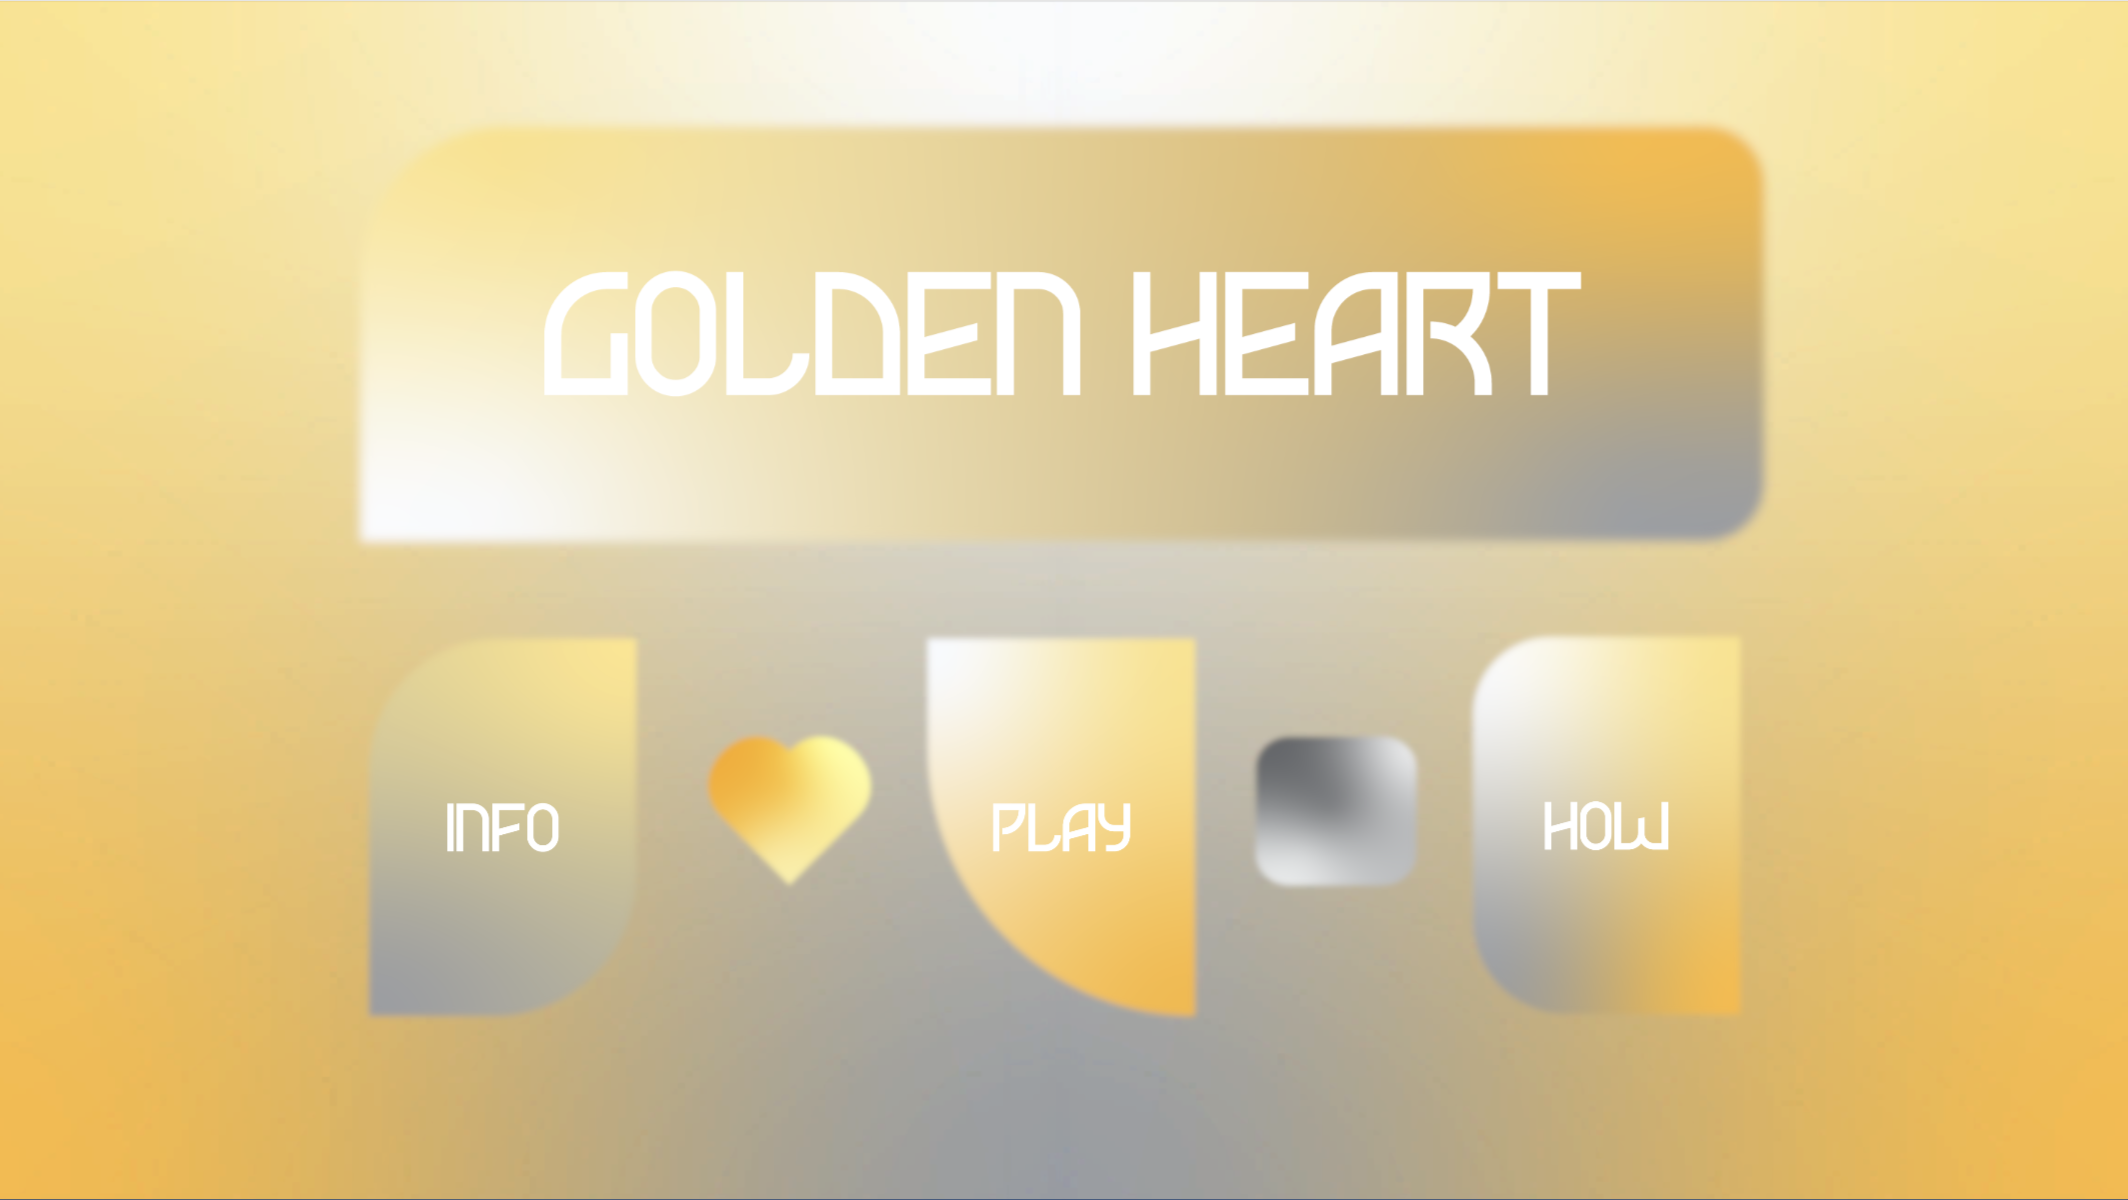 GOLDEN HEART